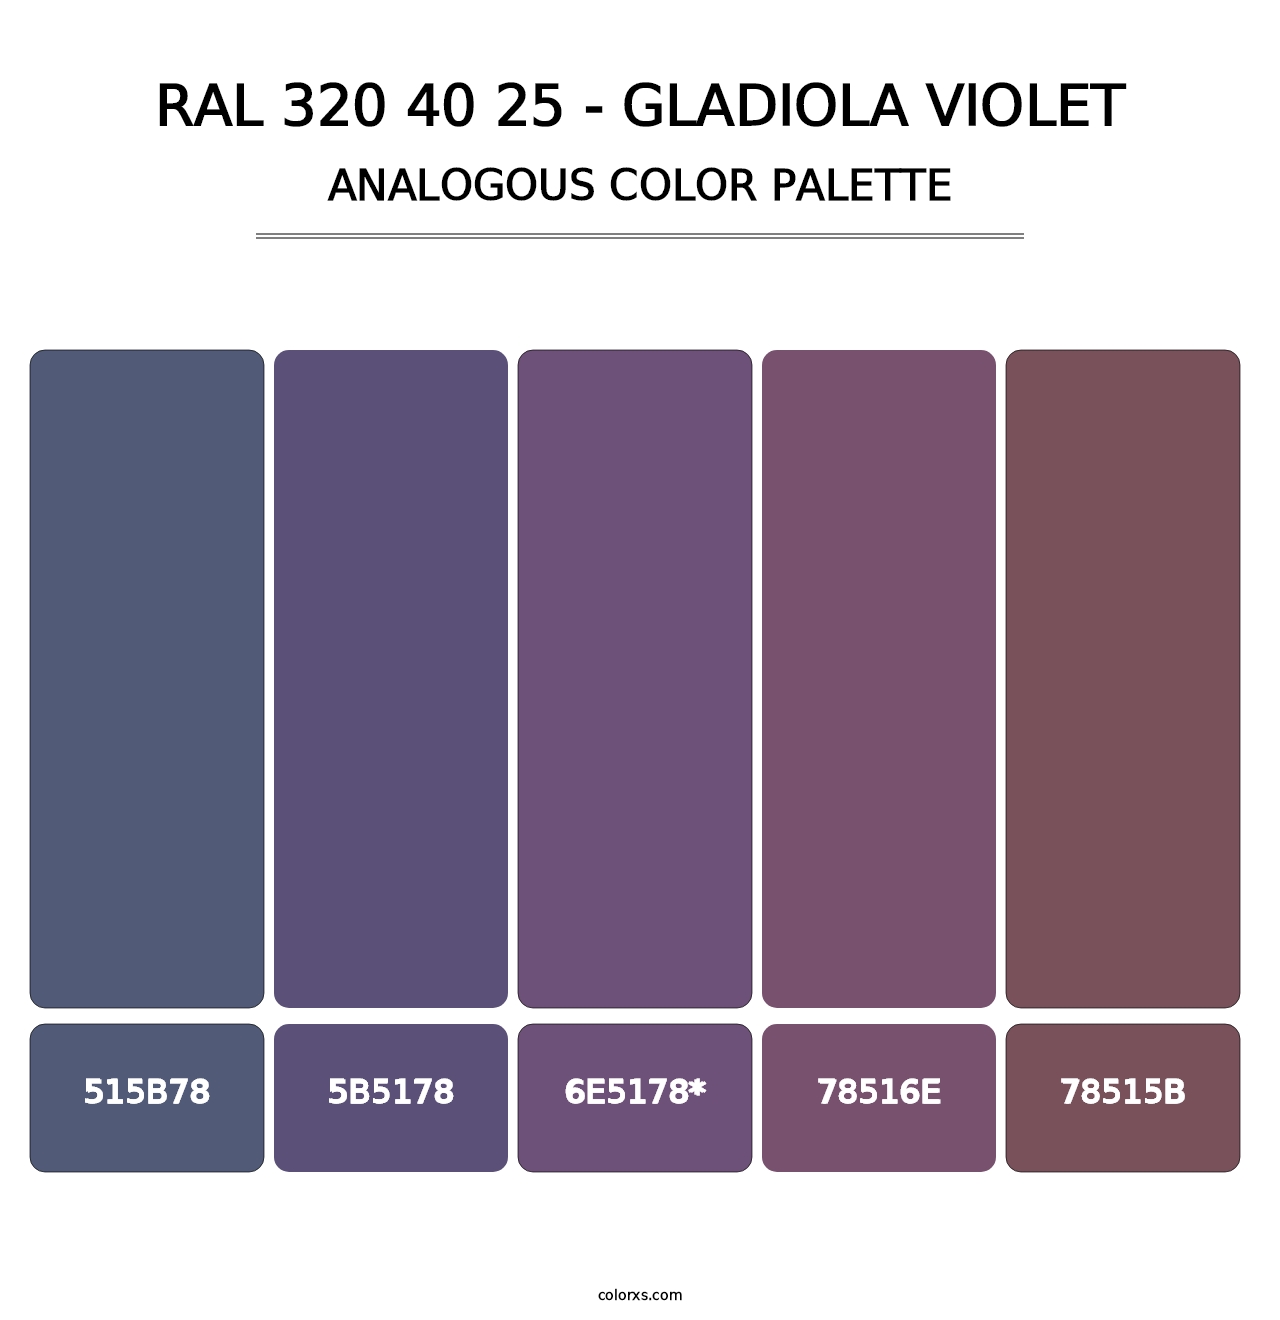 RAL 320 40 25 - Gladiola Violet - Analogous Color Palette